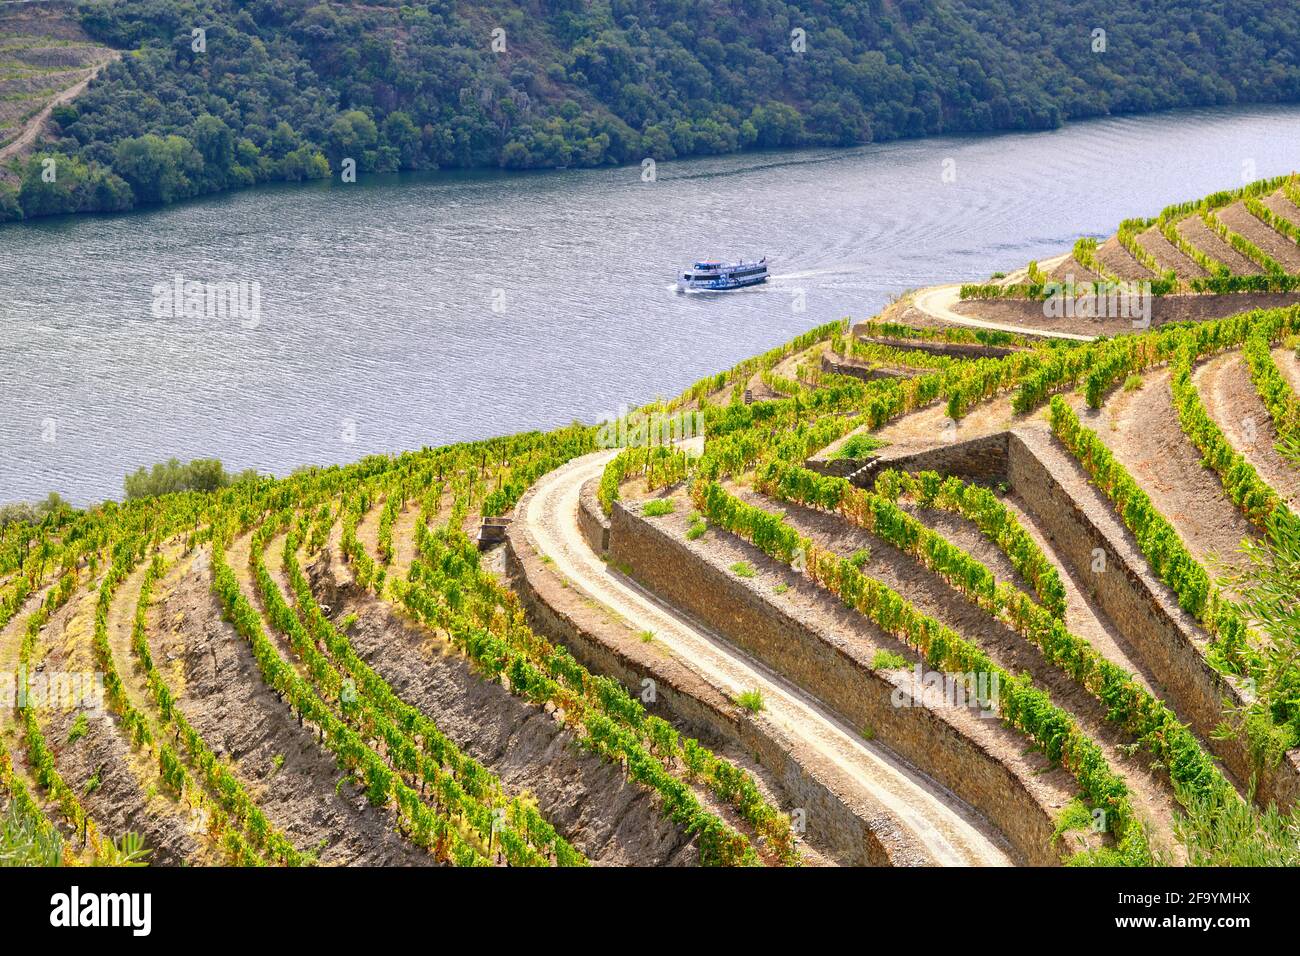 Un bateau de visite du fleuve Douro passant le long des vignobles en terrasse de Chanceleiros, Pinhao. Un site classé au patrimoine mondial de l'UNESCO, Portugal Banque D'Images